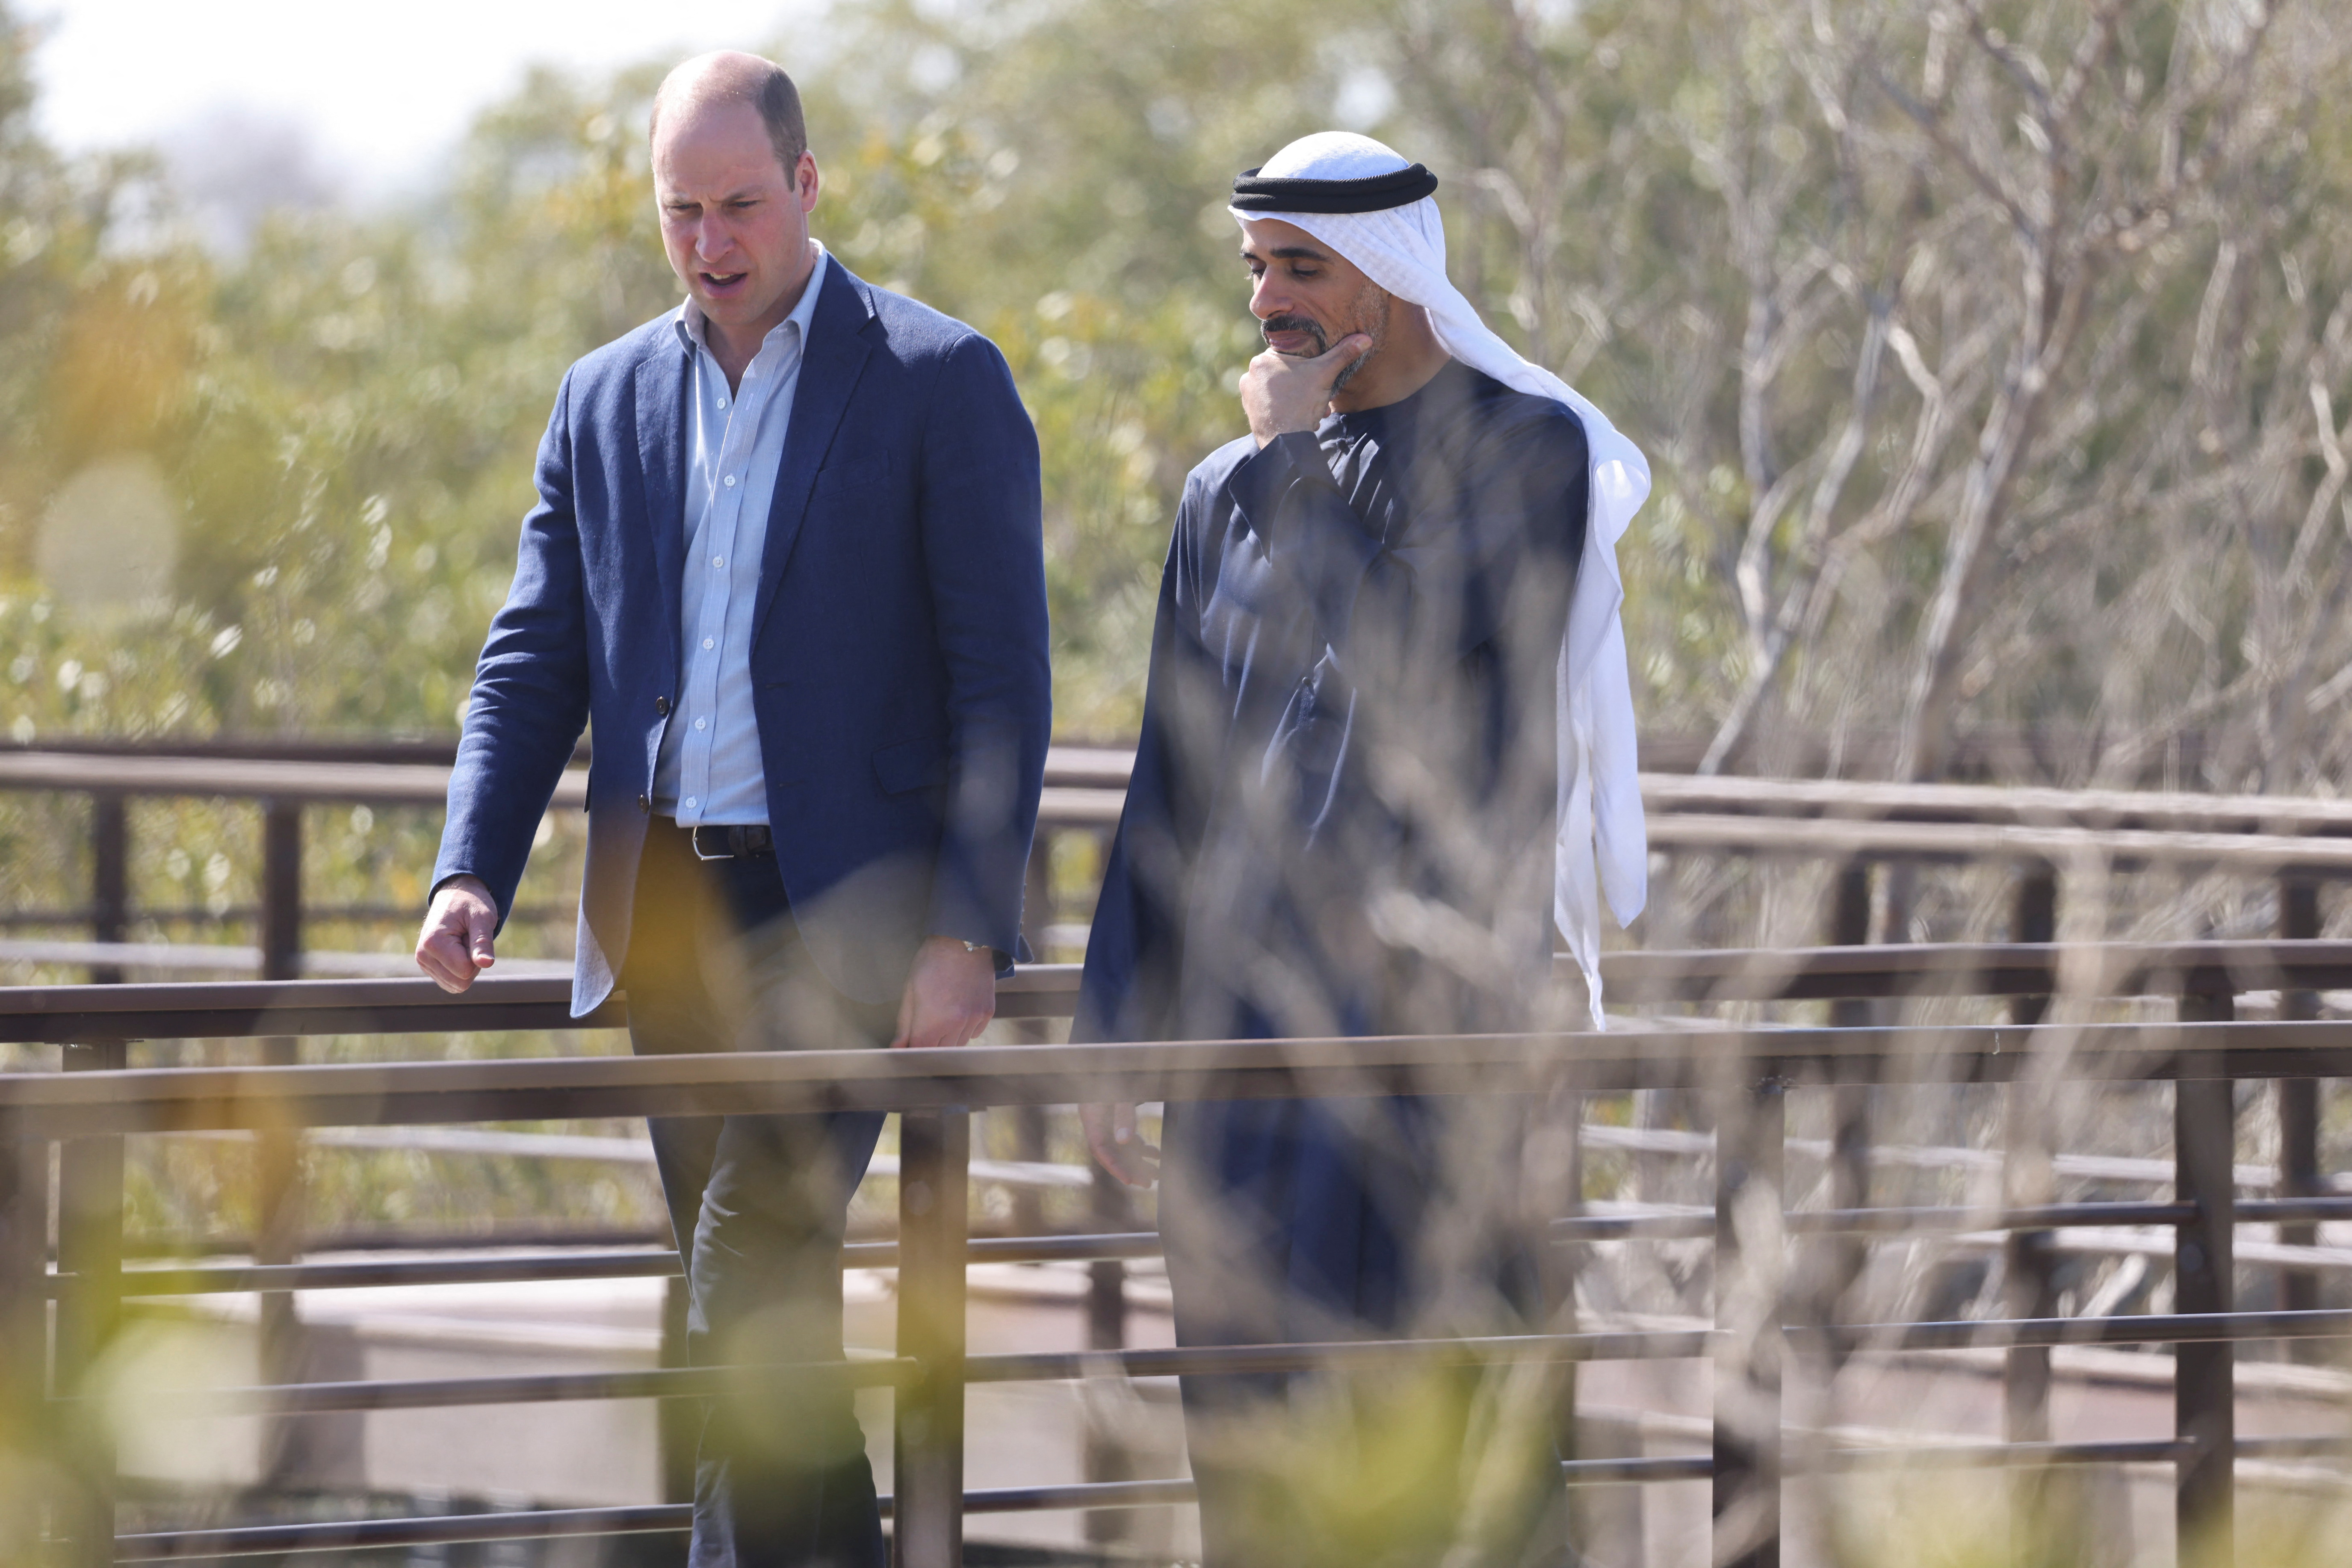 Prince William visits UAE as Britain seeks to deepen ties Reuters